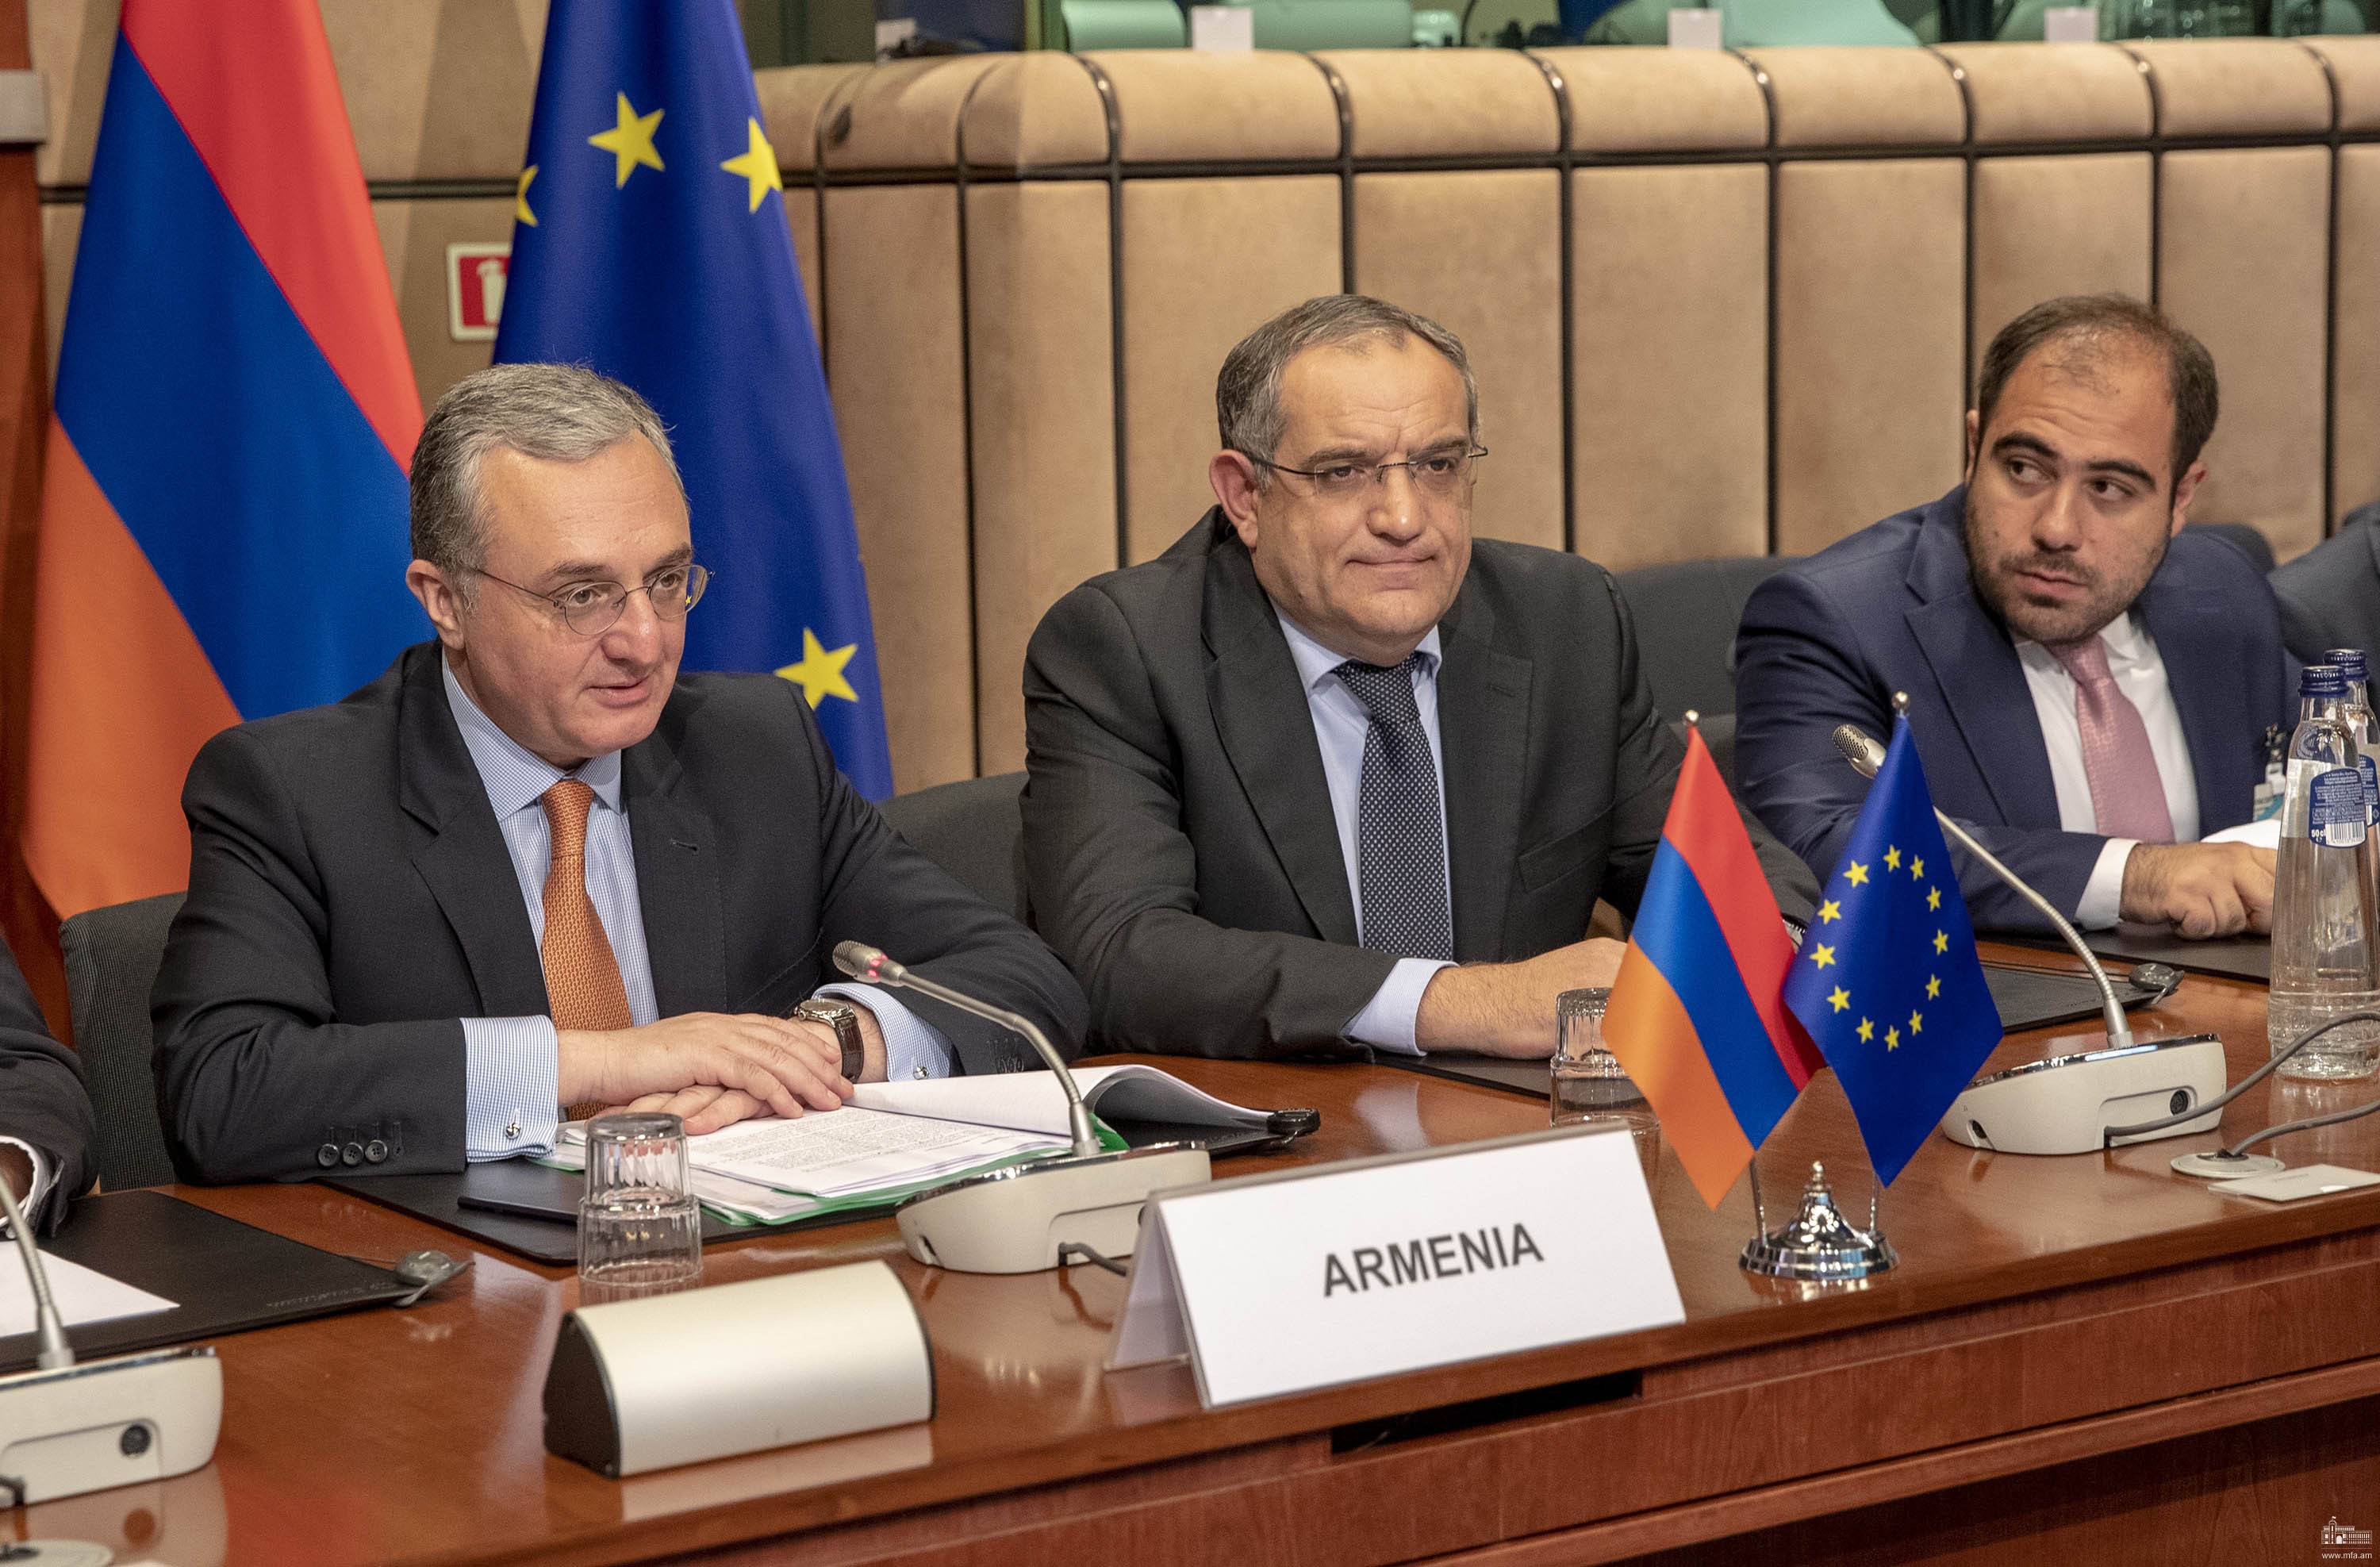  ЕС выделит Армении дополнительно 25 млн. евро на 2019 год 